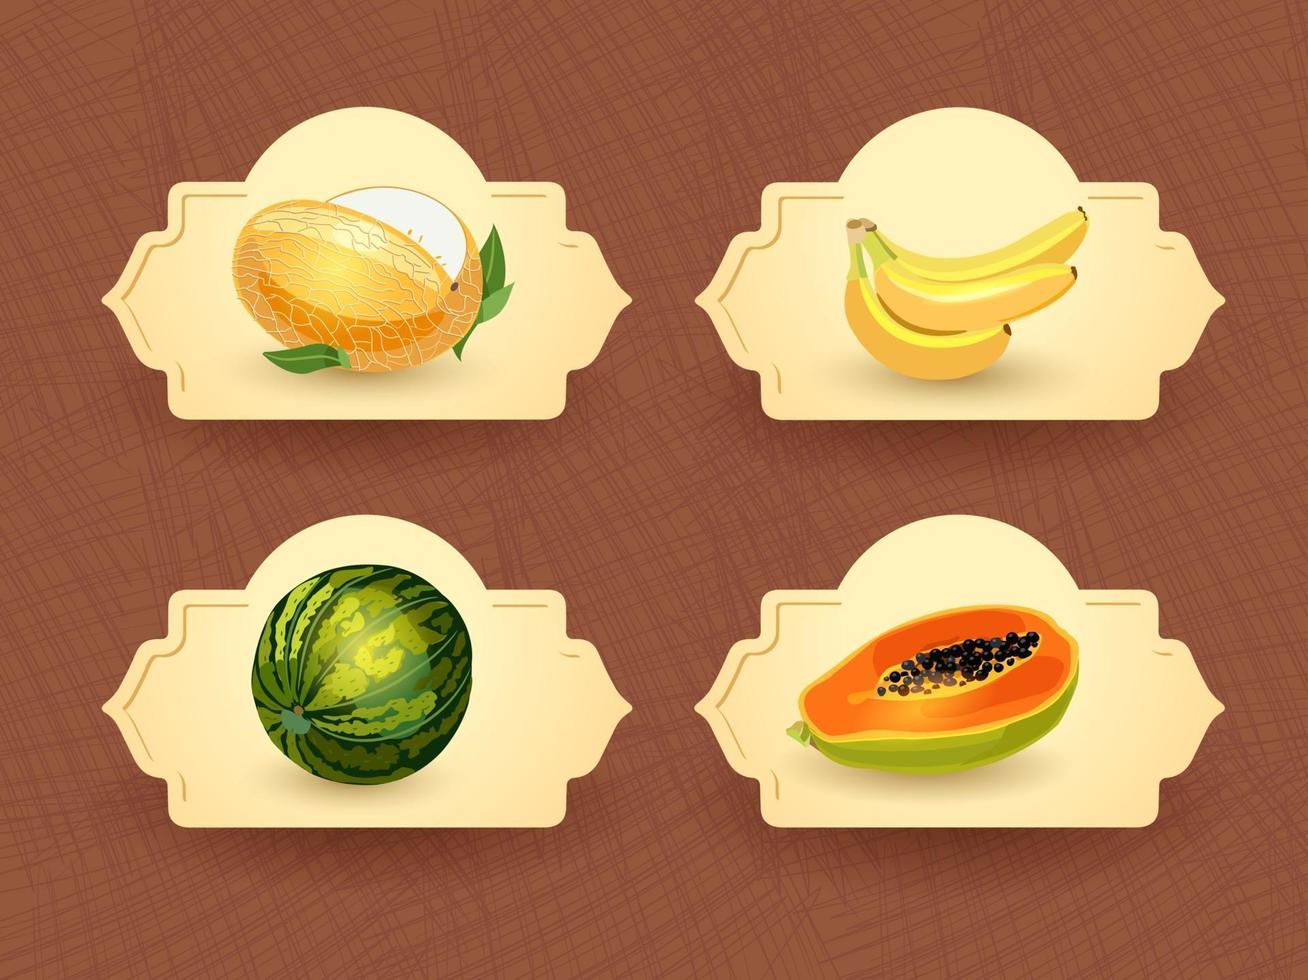 logotipo vectorial para frutas exóticas tailandesas, frutas de tailandia, etiqueta de embalaje, insignia decorativa con ilustración de frutas tailandesas. melón, plátano, sandía, papaya. ilustración vectorial vector